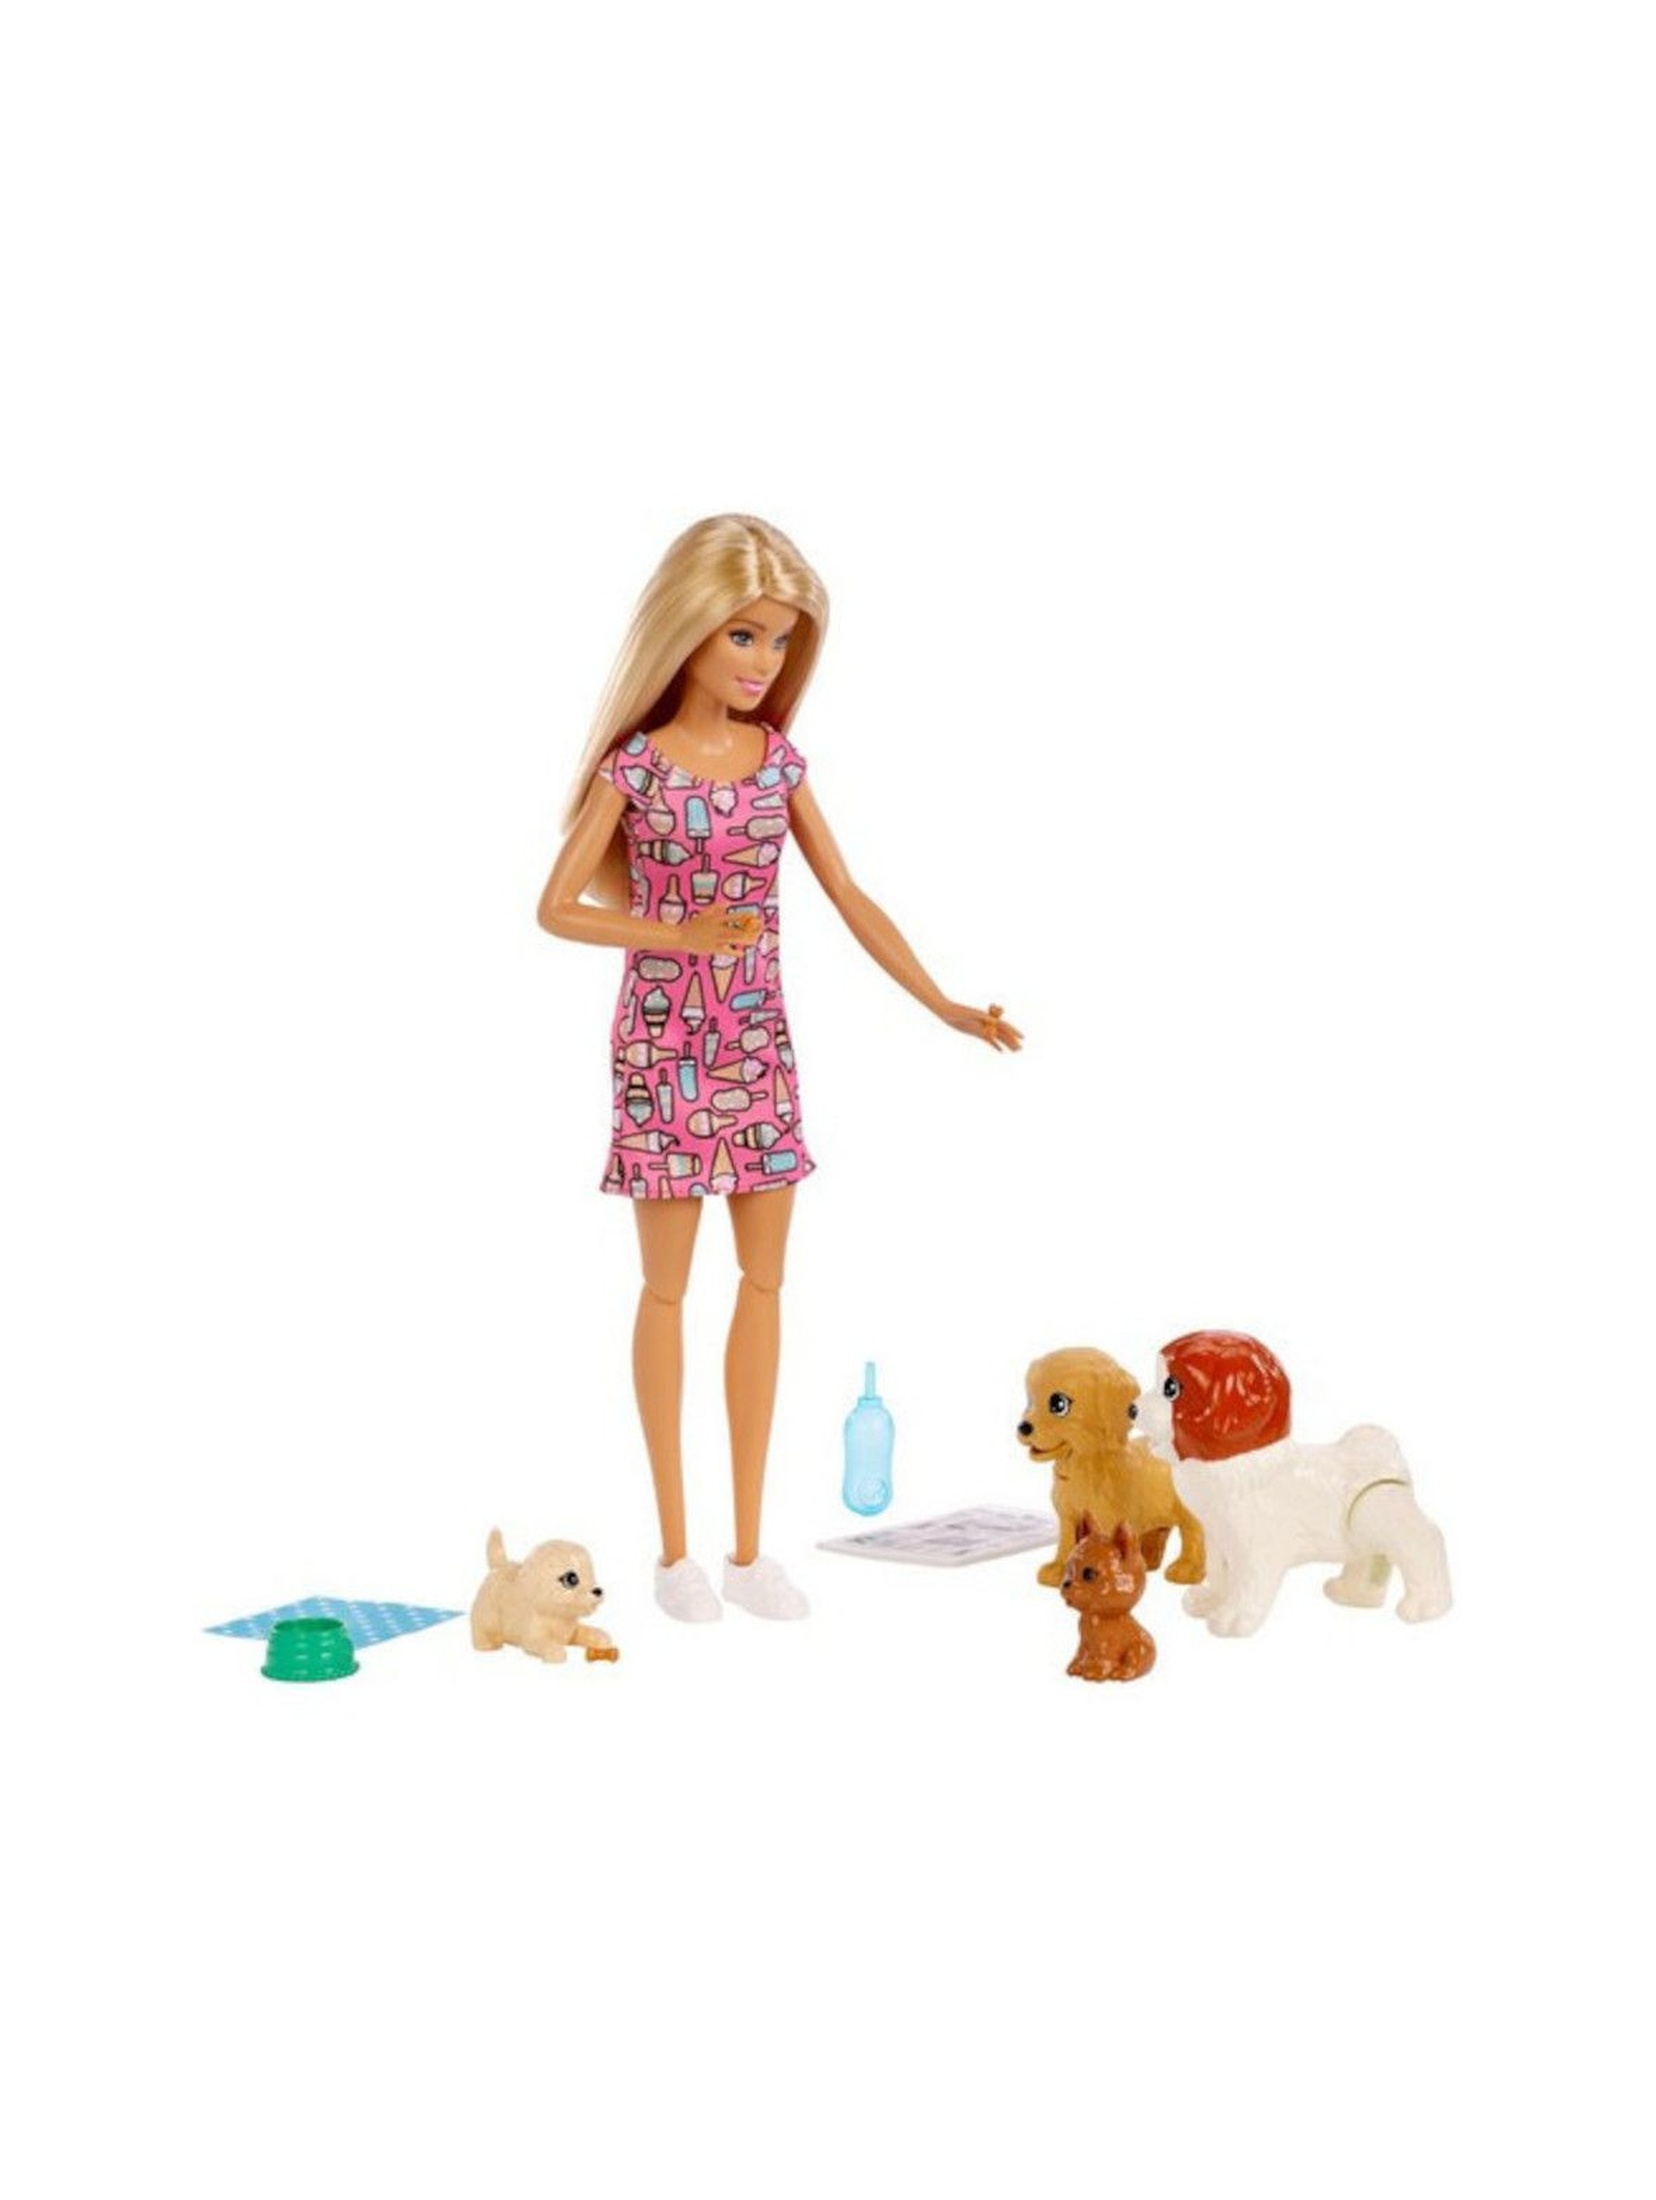 Barbie - Opiekunka piesków wiek 3+